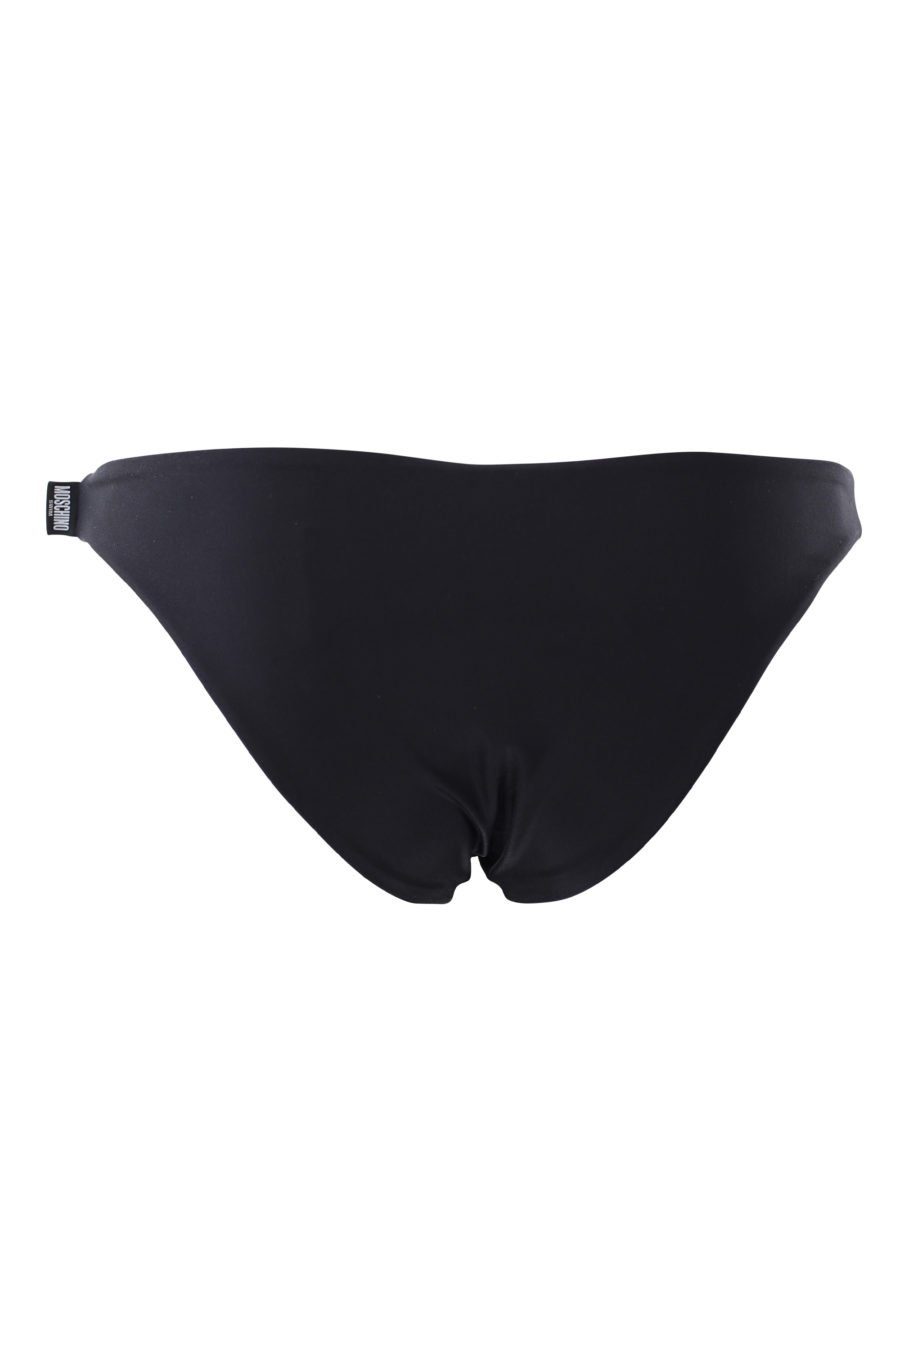 Black swimming costume - IMG 2134